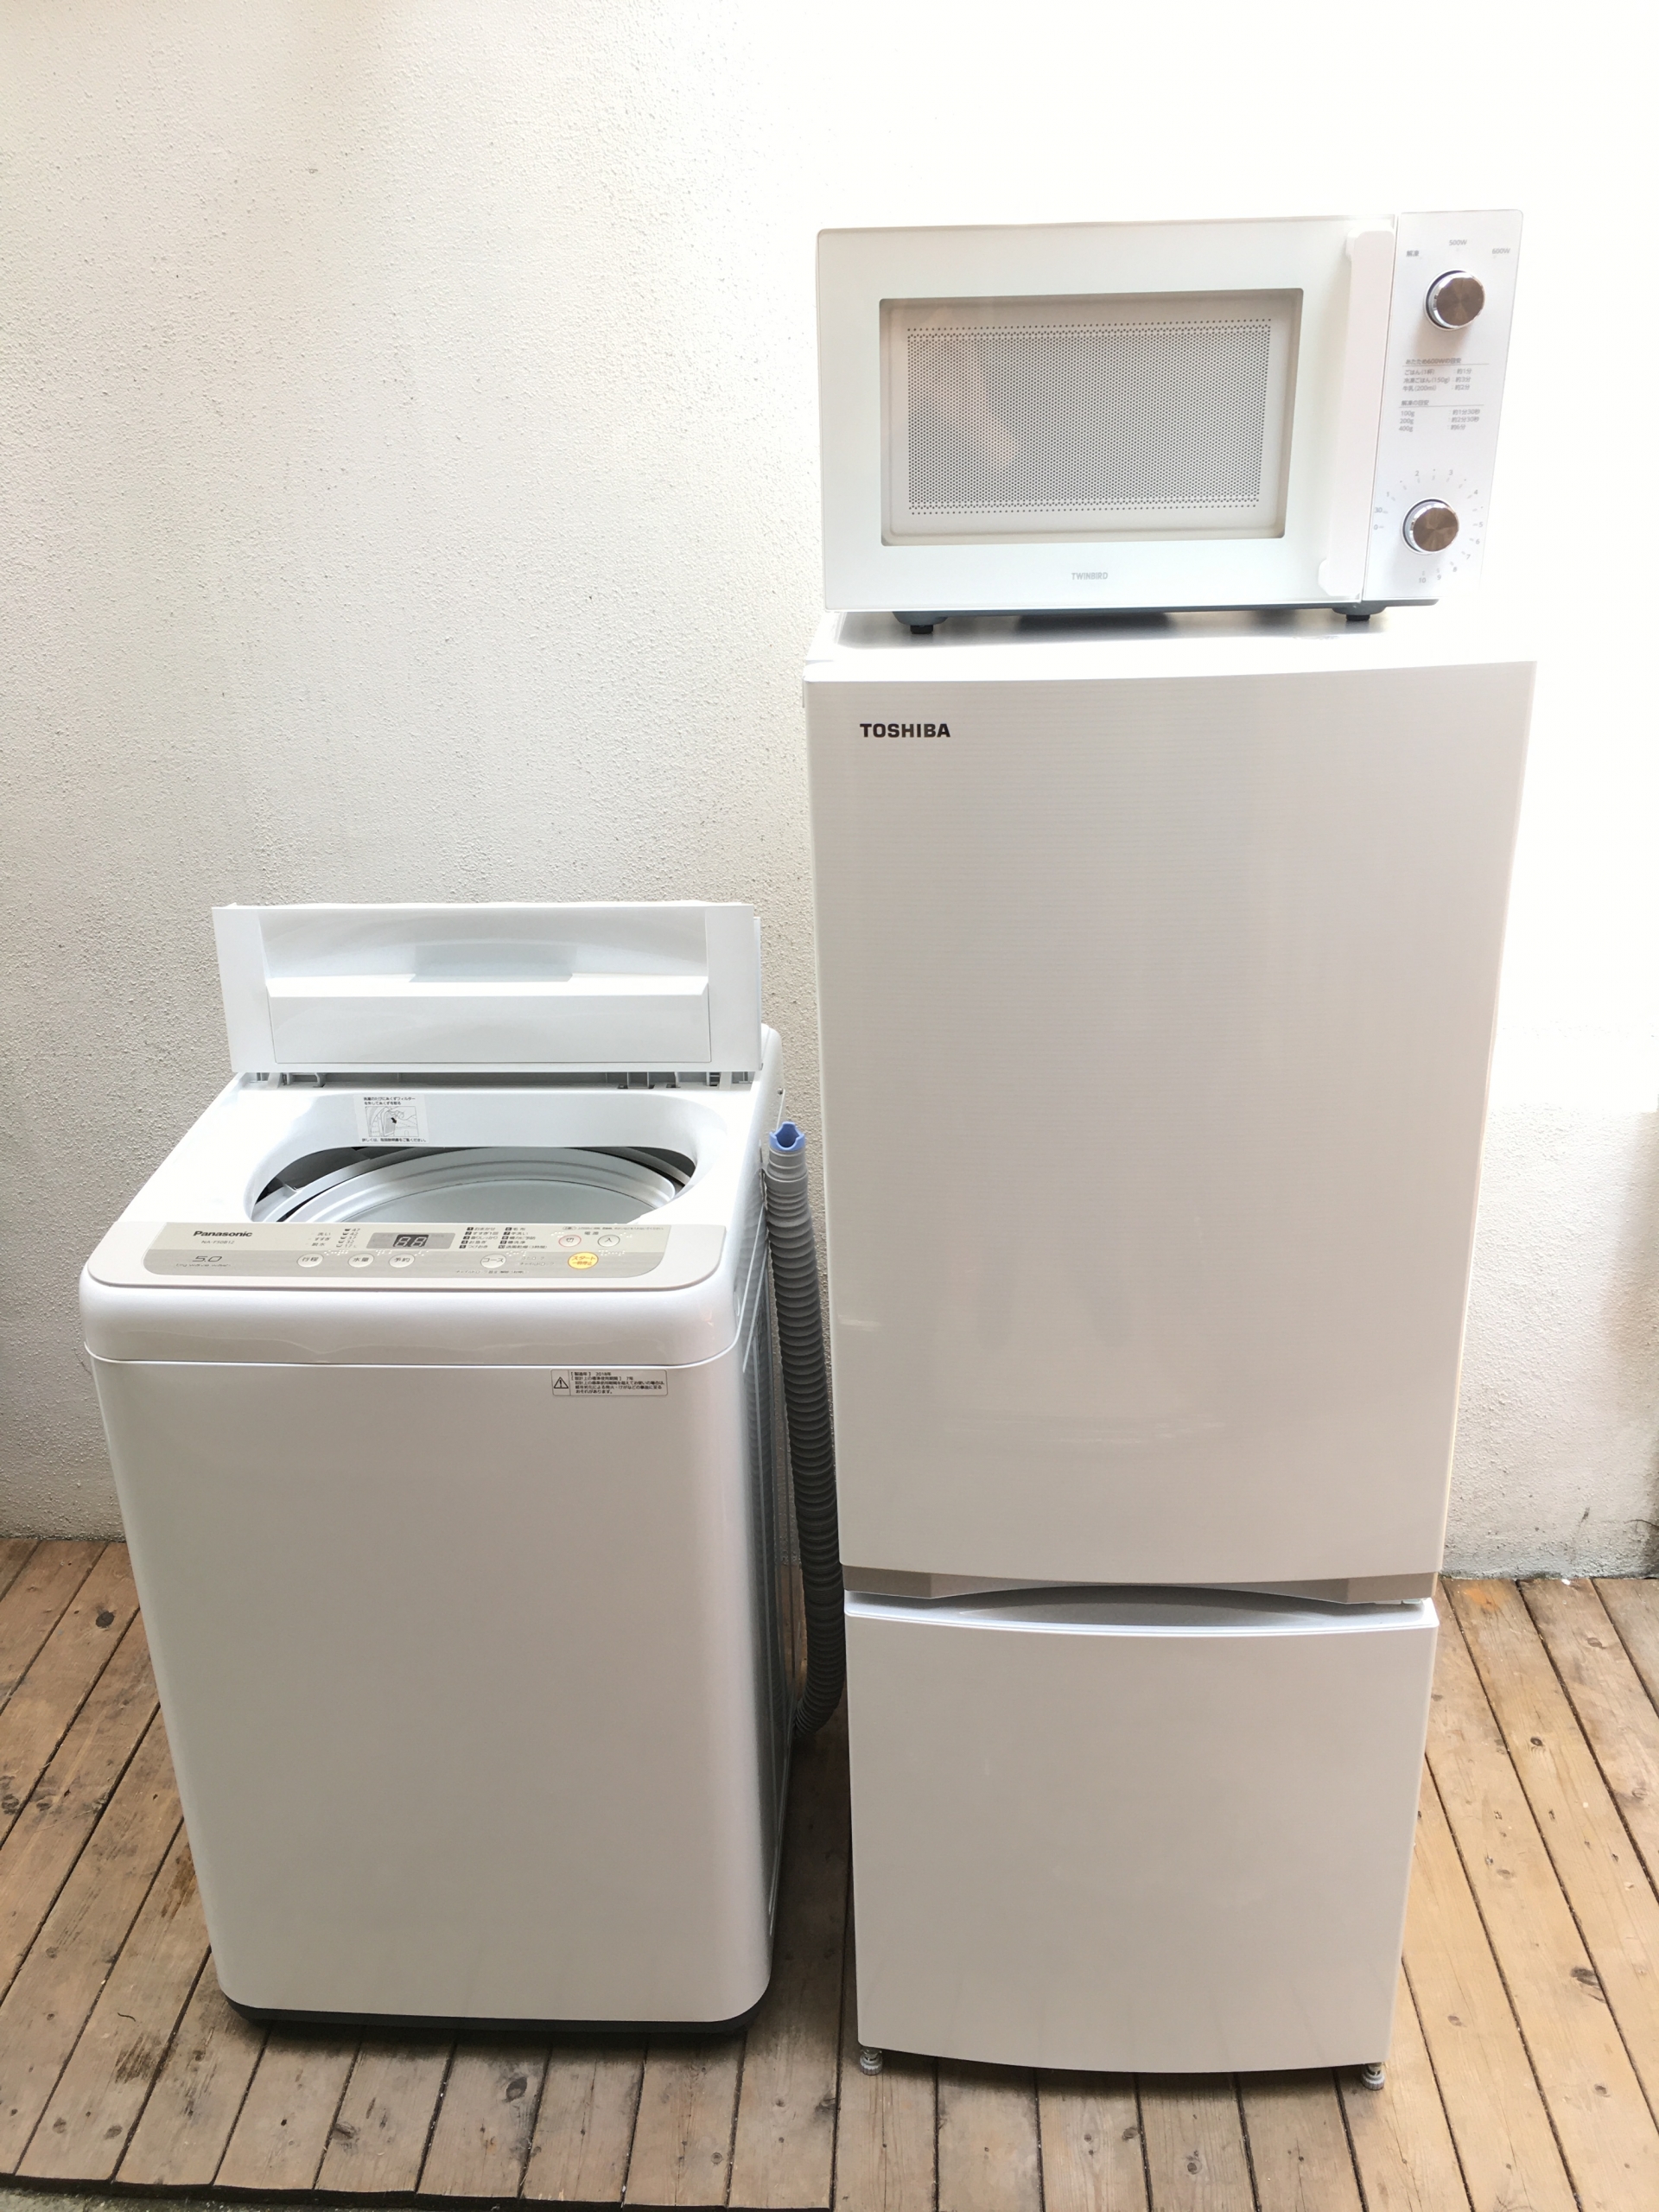 3点セット販売】東芝冷蔵庫・パナ洗濯機・ツインバード電子レンジ 